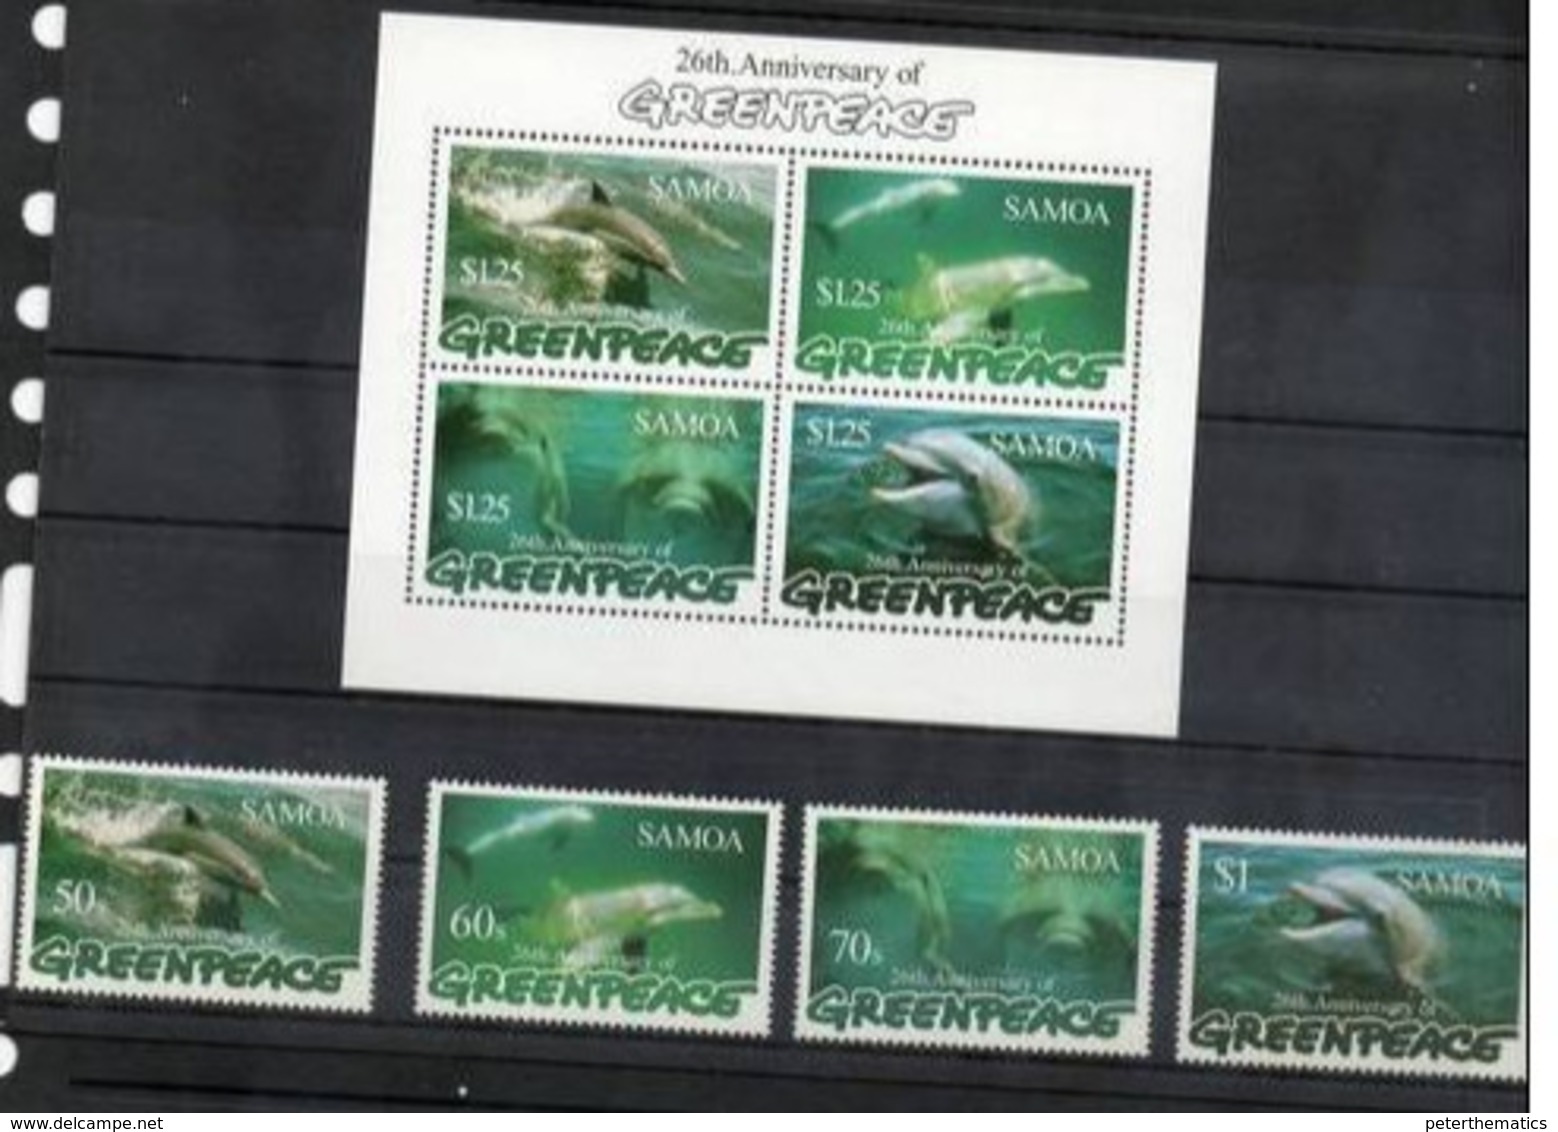 SAMOA,1997,DOLPHINS, GREENPEACE,4v+S/SHEET, MNH - Dauphins